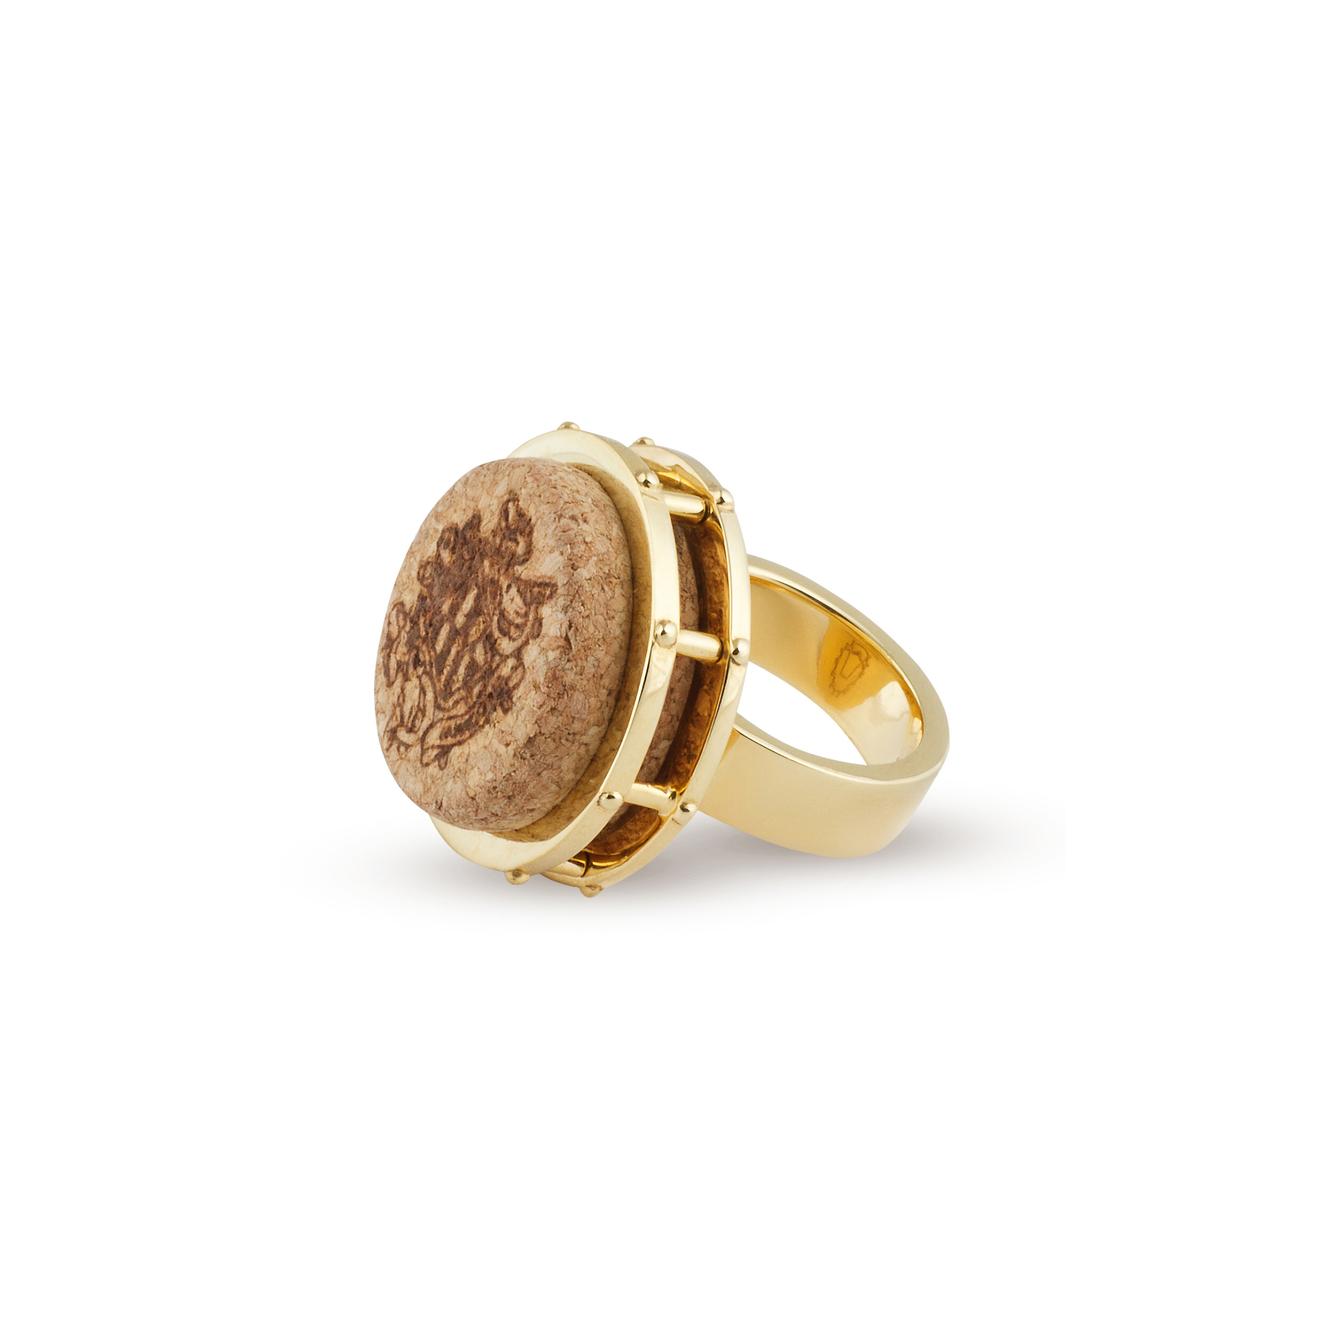 AMARIN Jewelry Позолоченное кольцо CORK из бронзы Бочка amarin jewelry подвеска cork из серебра бочка